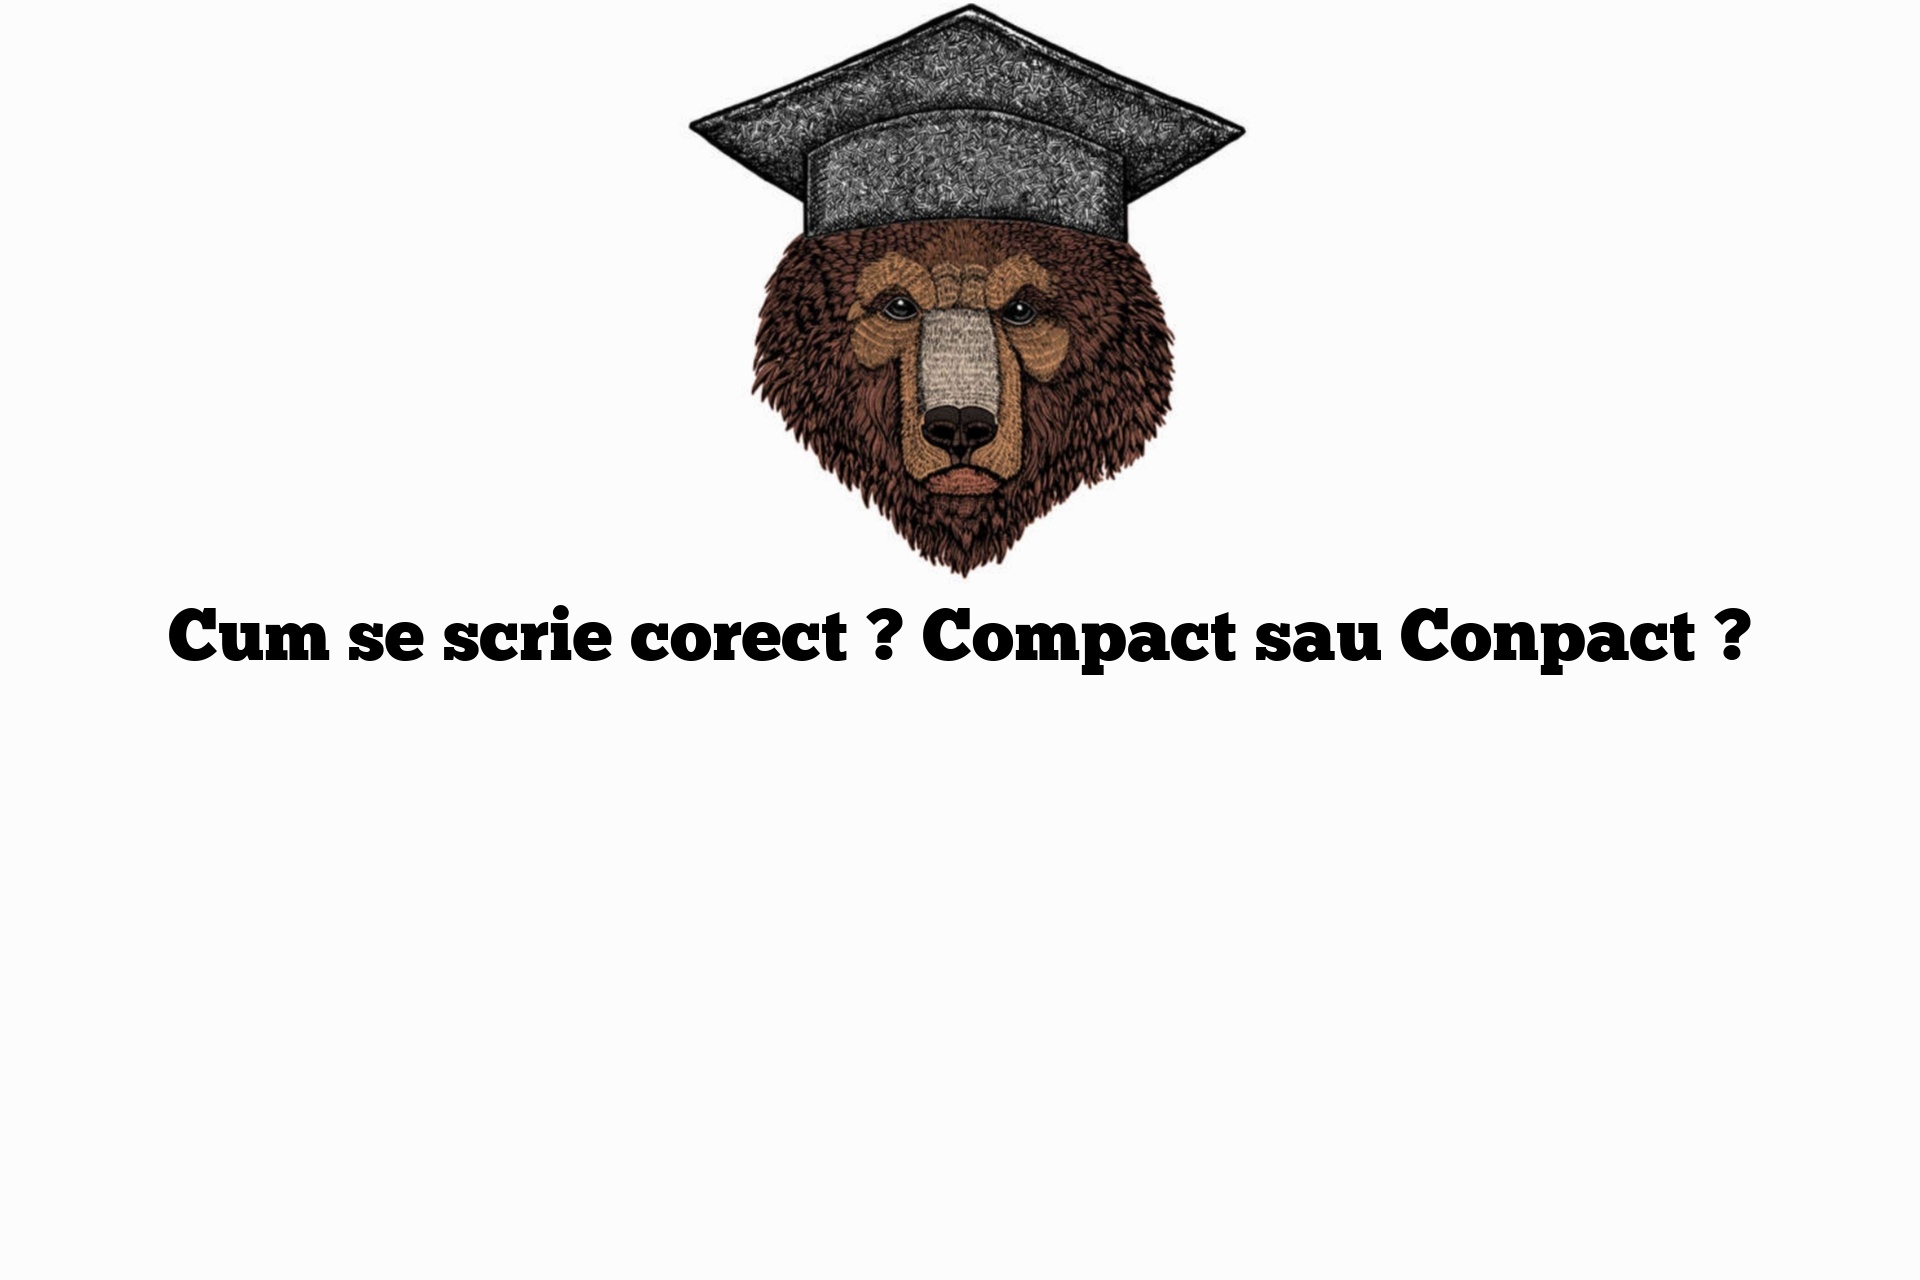 Cum se scrie corect ? Compact sau Conpact ?